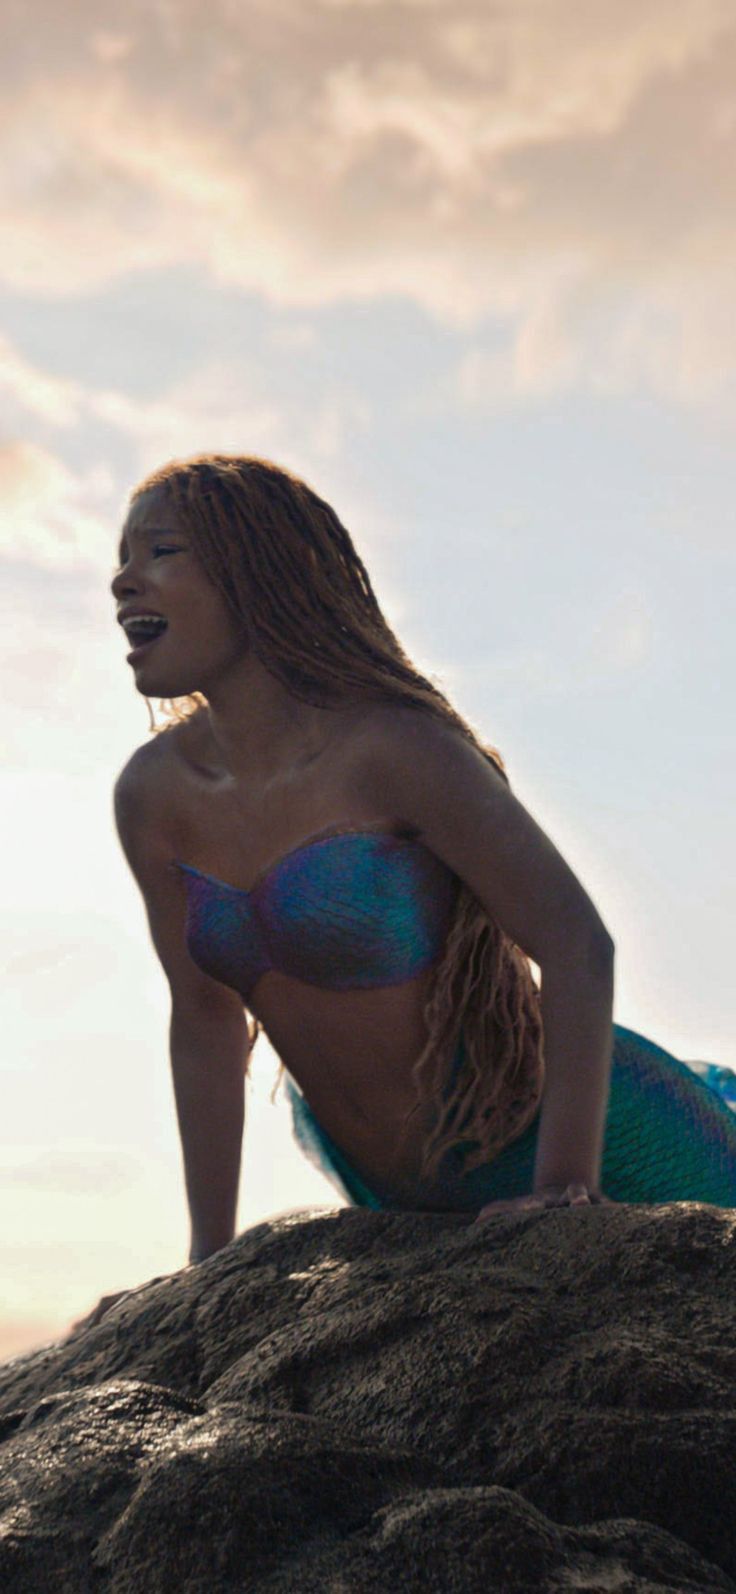 A woman in mermaid costume on top of rock - Mermaid